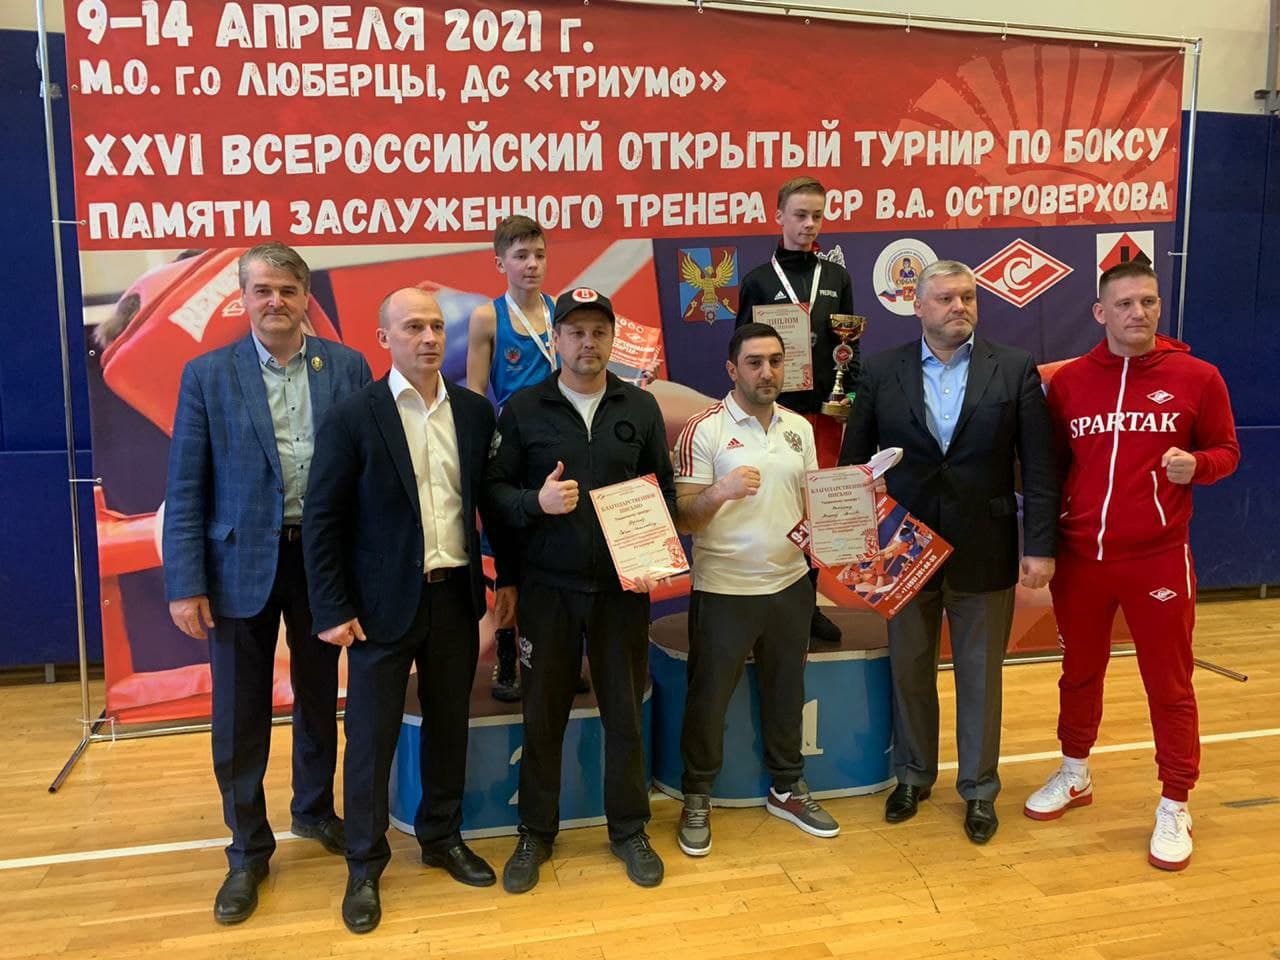 Юноши из Подмосковья заняли первое общекомандное место на всероссийском турнире по боксу